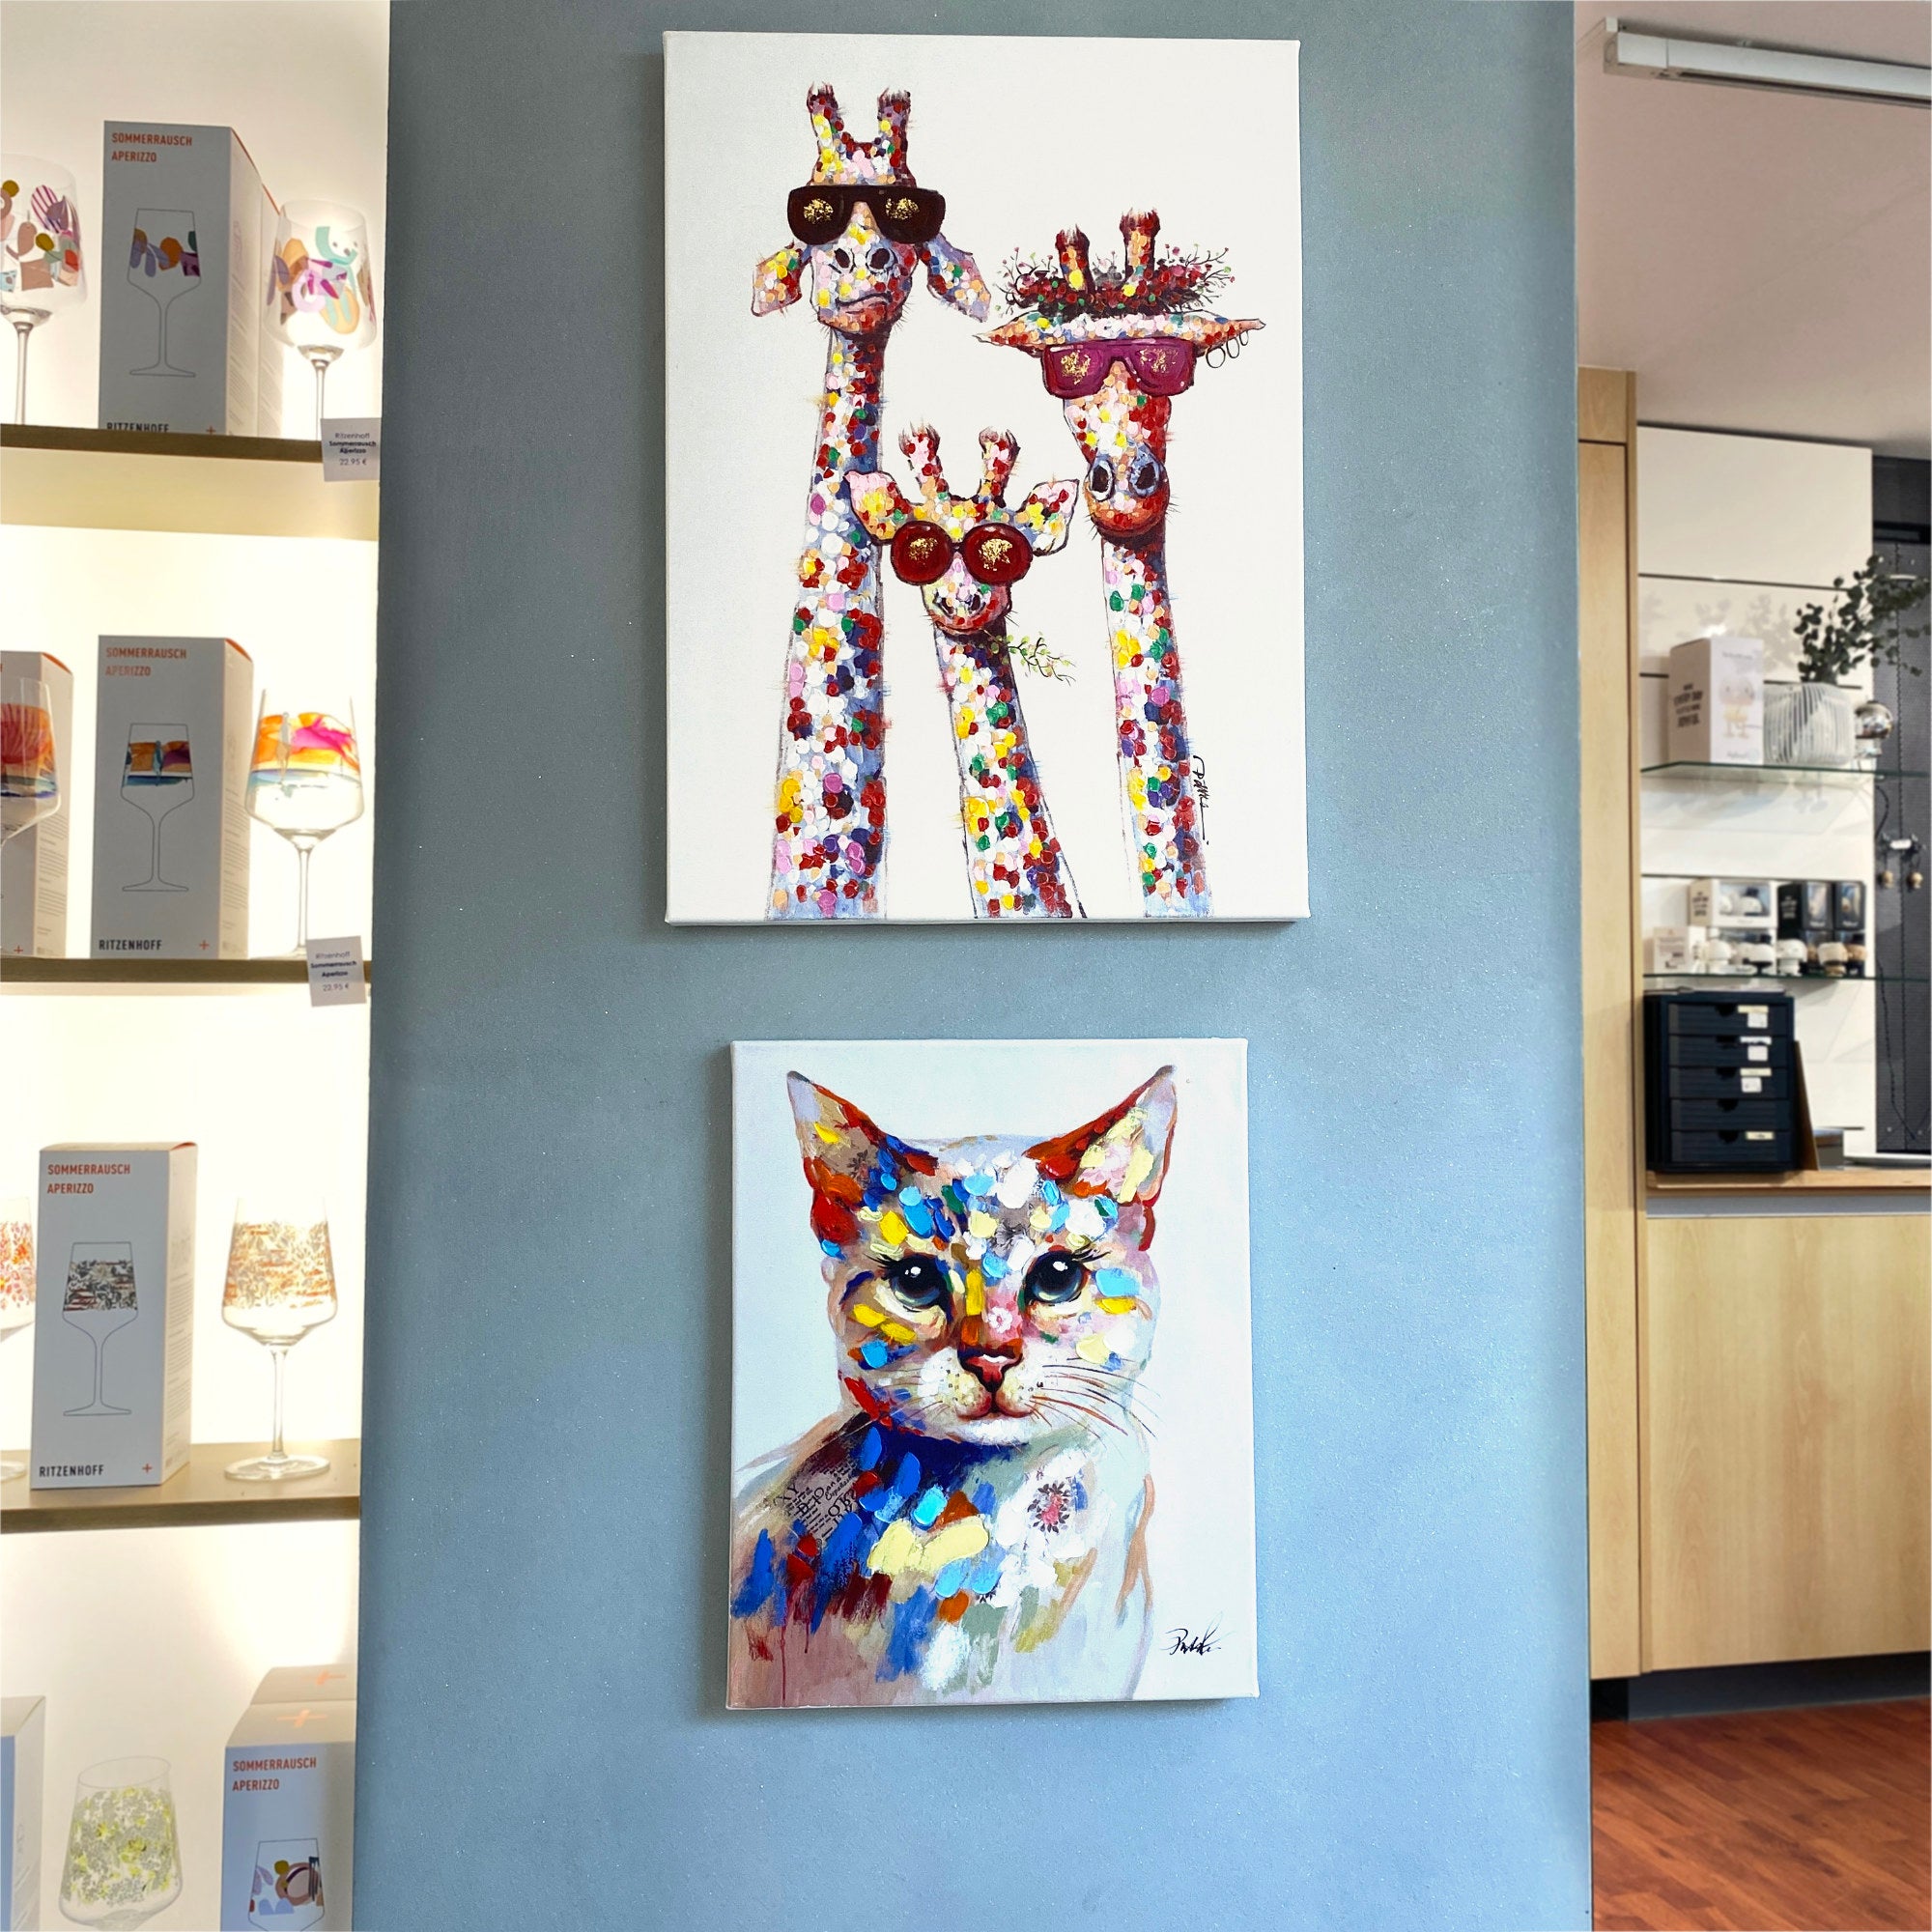 Zwei Kunstwerke von Imageland: Giraffen am Morgen und buntes Kätzchen